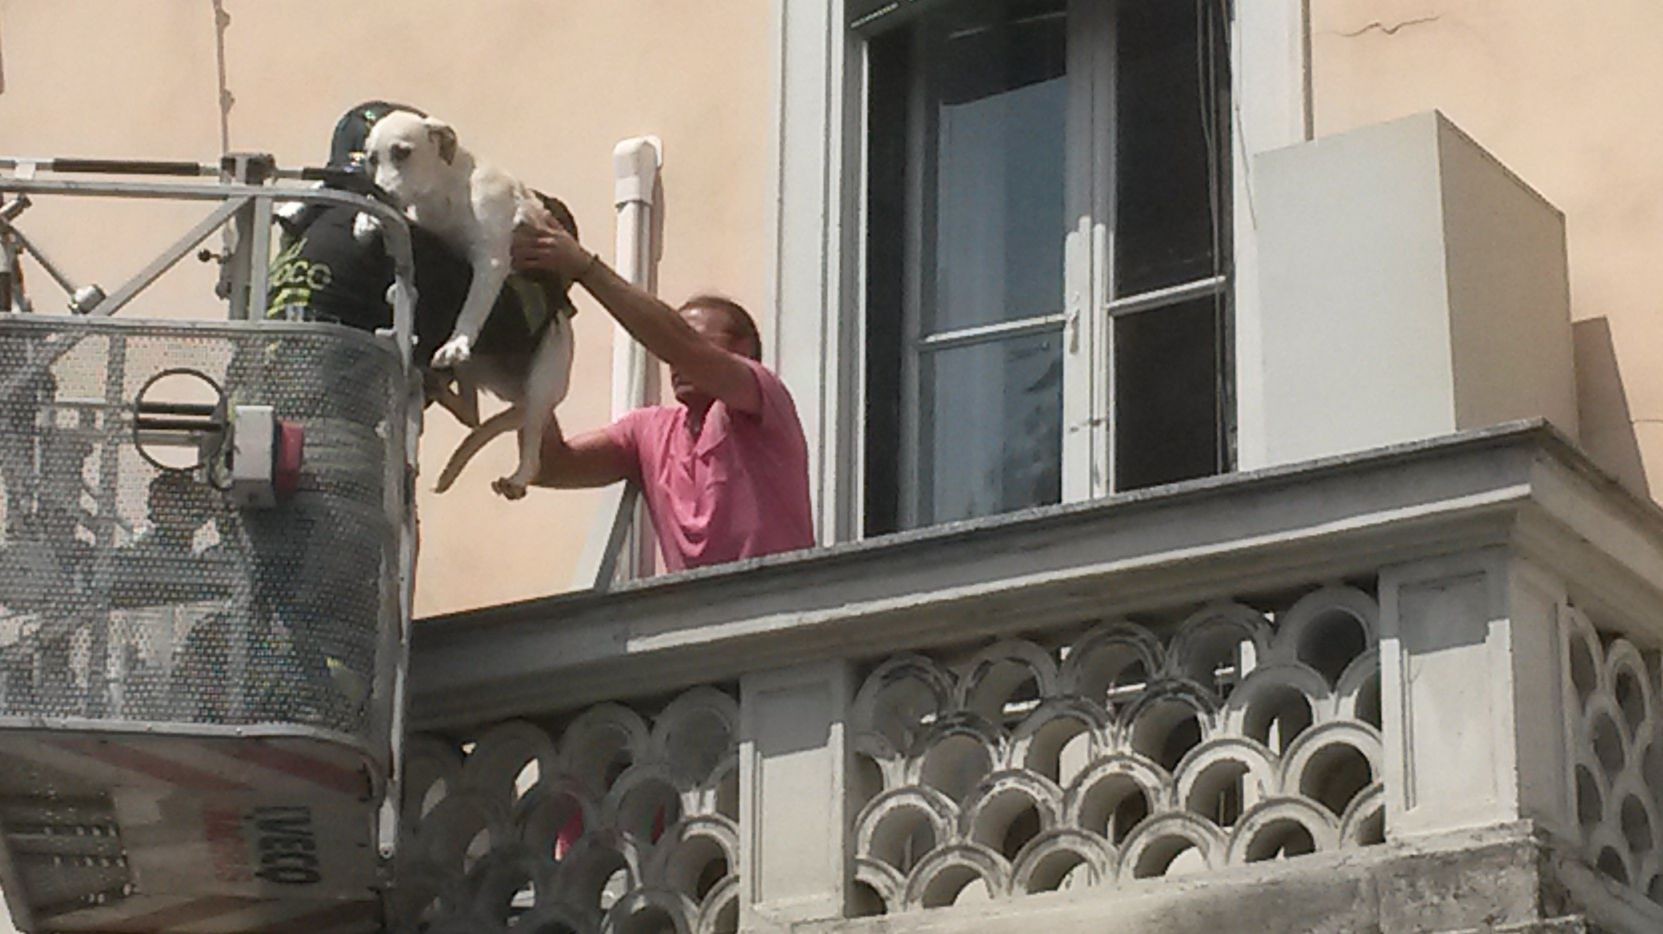 Milano, in trappola sul balcone assolato: cane salvato da polizia e Vigili del fuoco